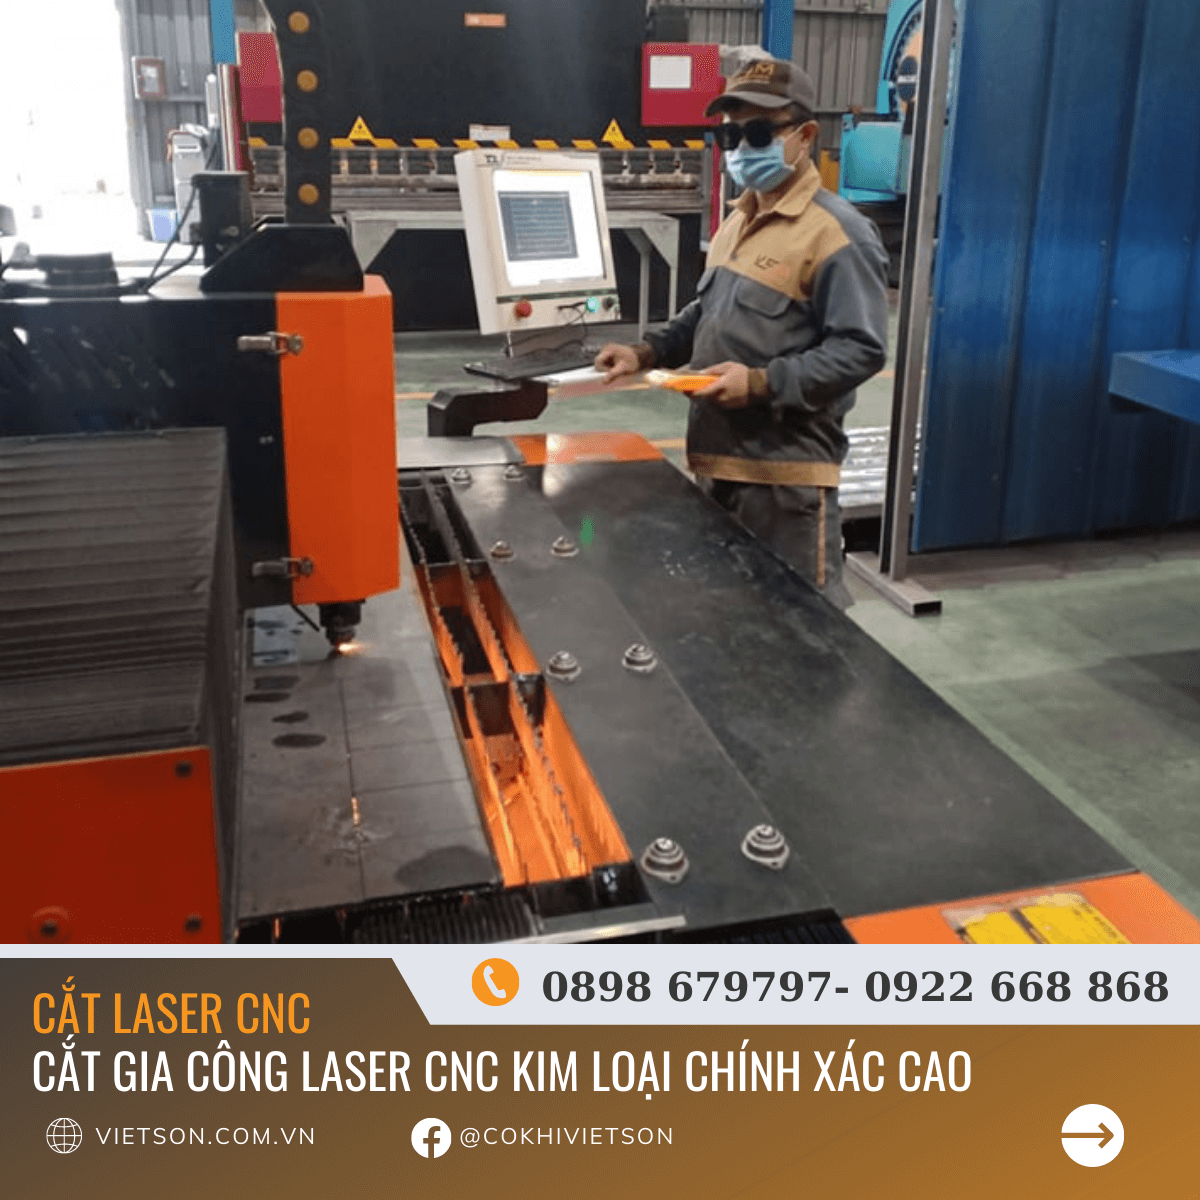 Cơ khí Việt Sơn chuyên gia công cắt laser CNC tại Tp.HCM